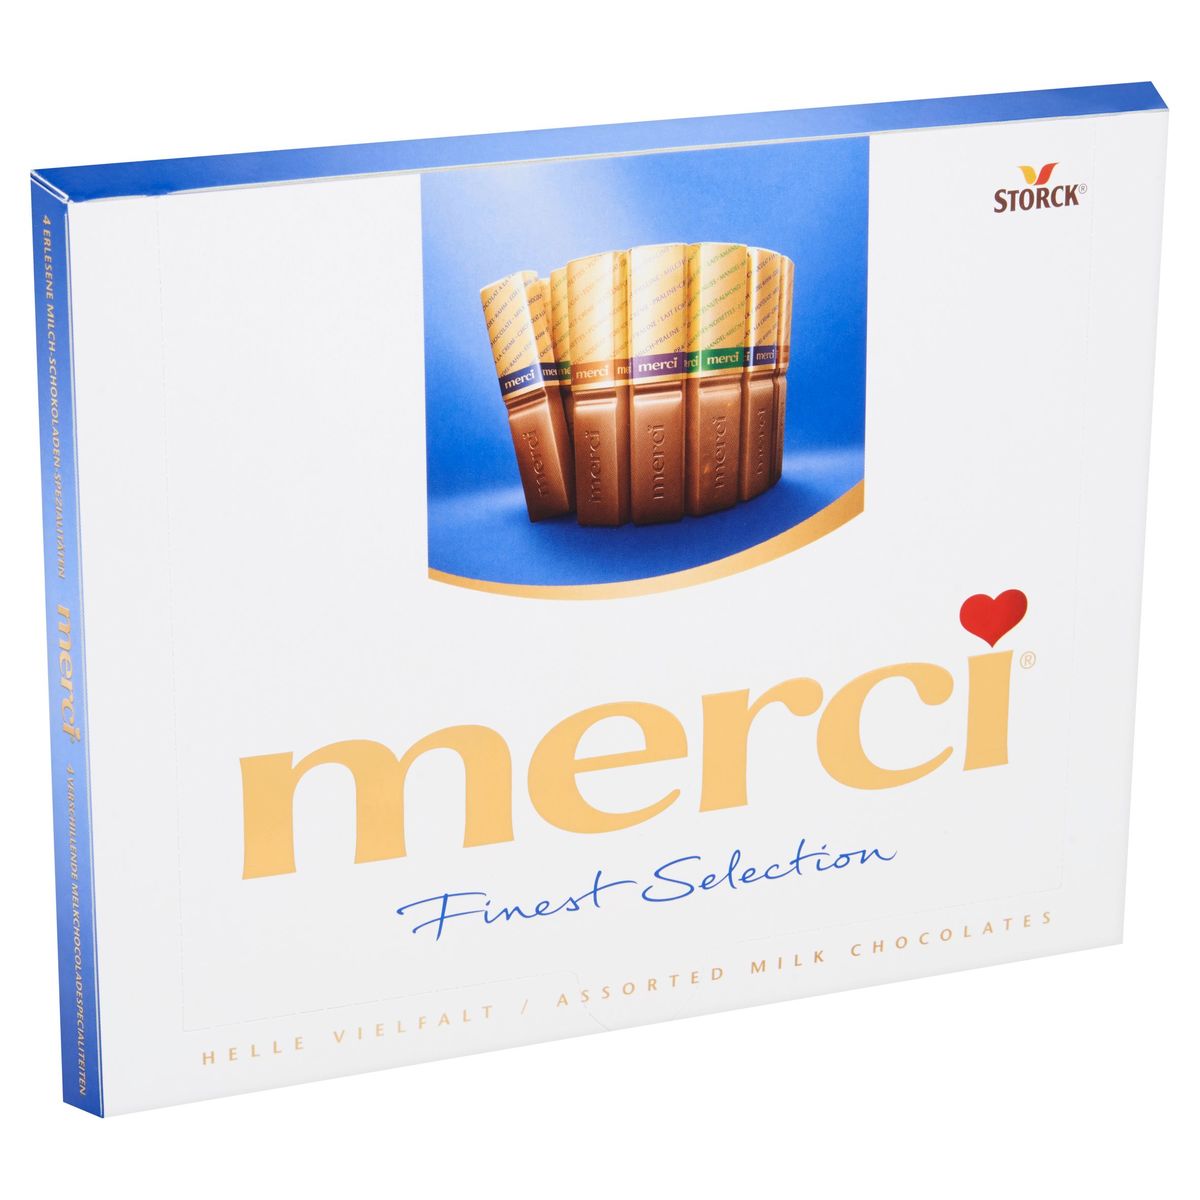 Finest Selection chocolats européens, au lait, 200 g – Merci : Boite